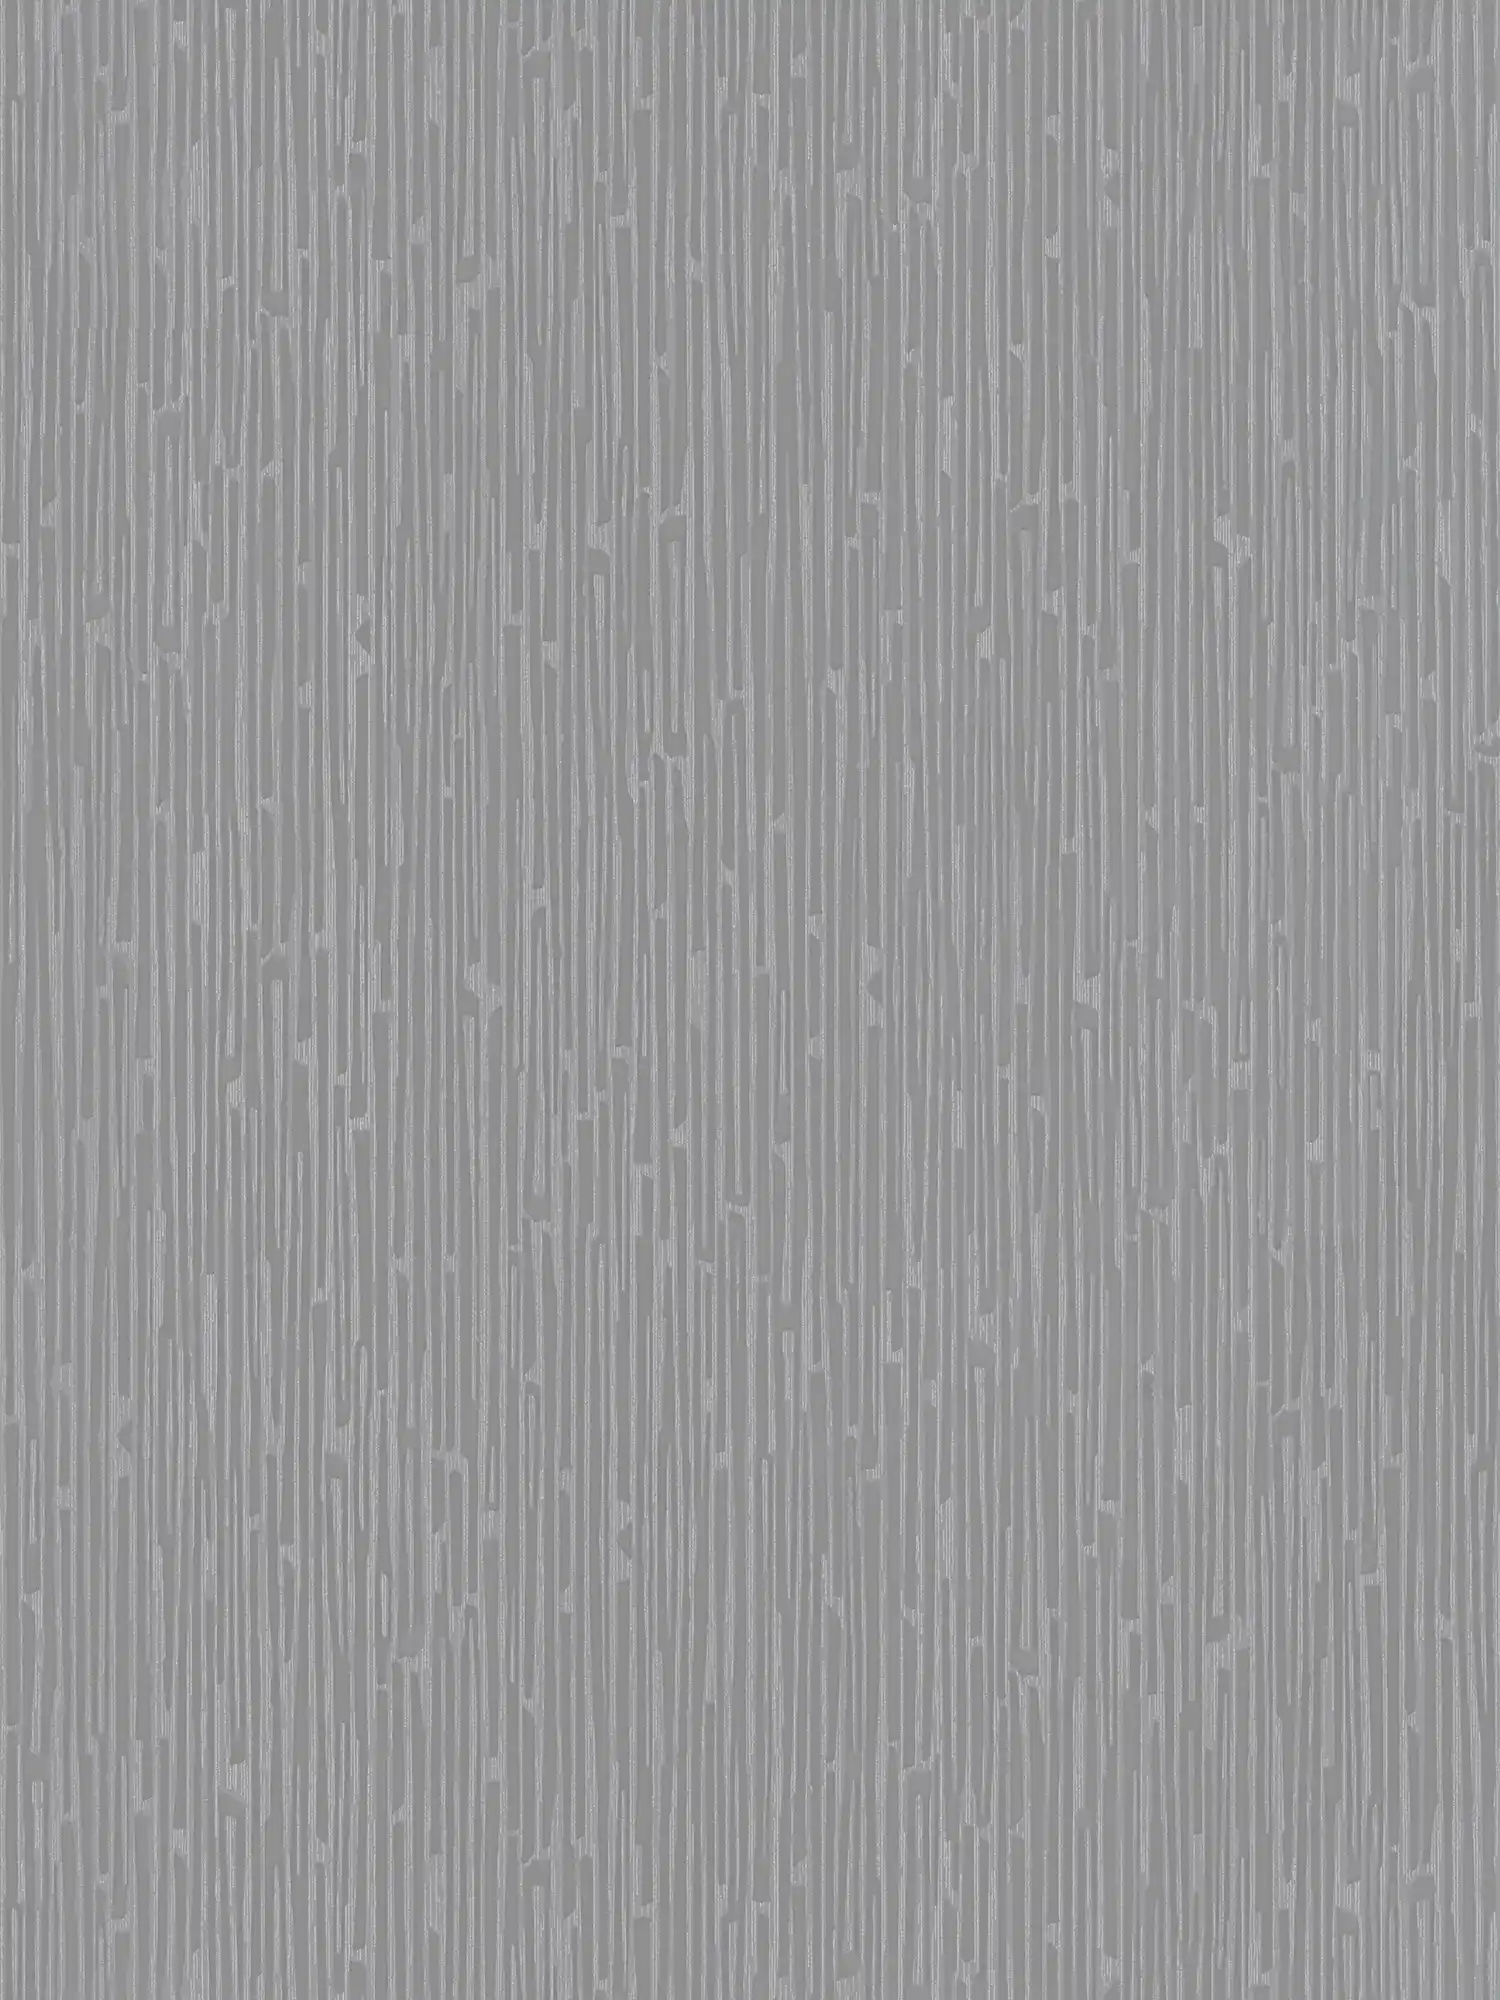 Melange wallpaper with metallic accents - grey
